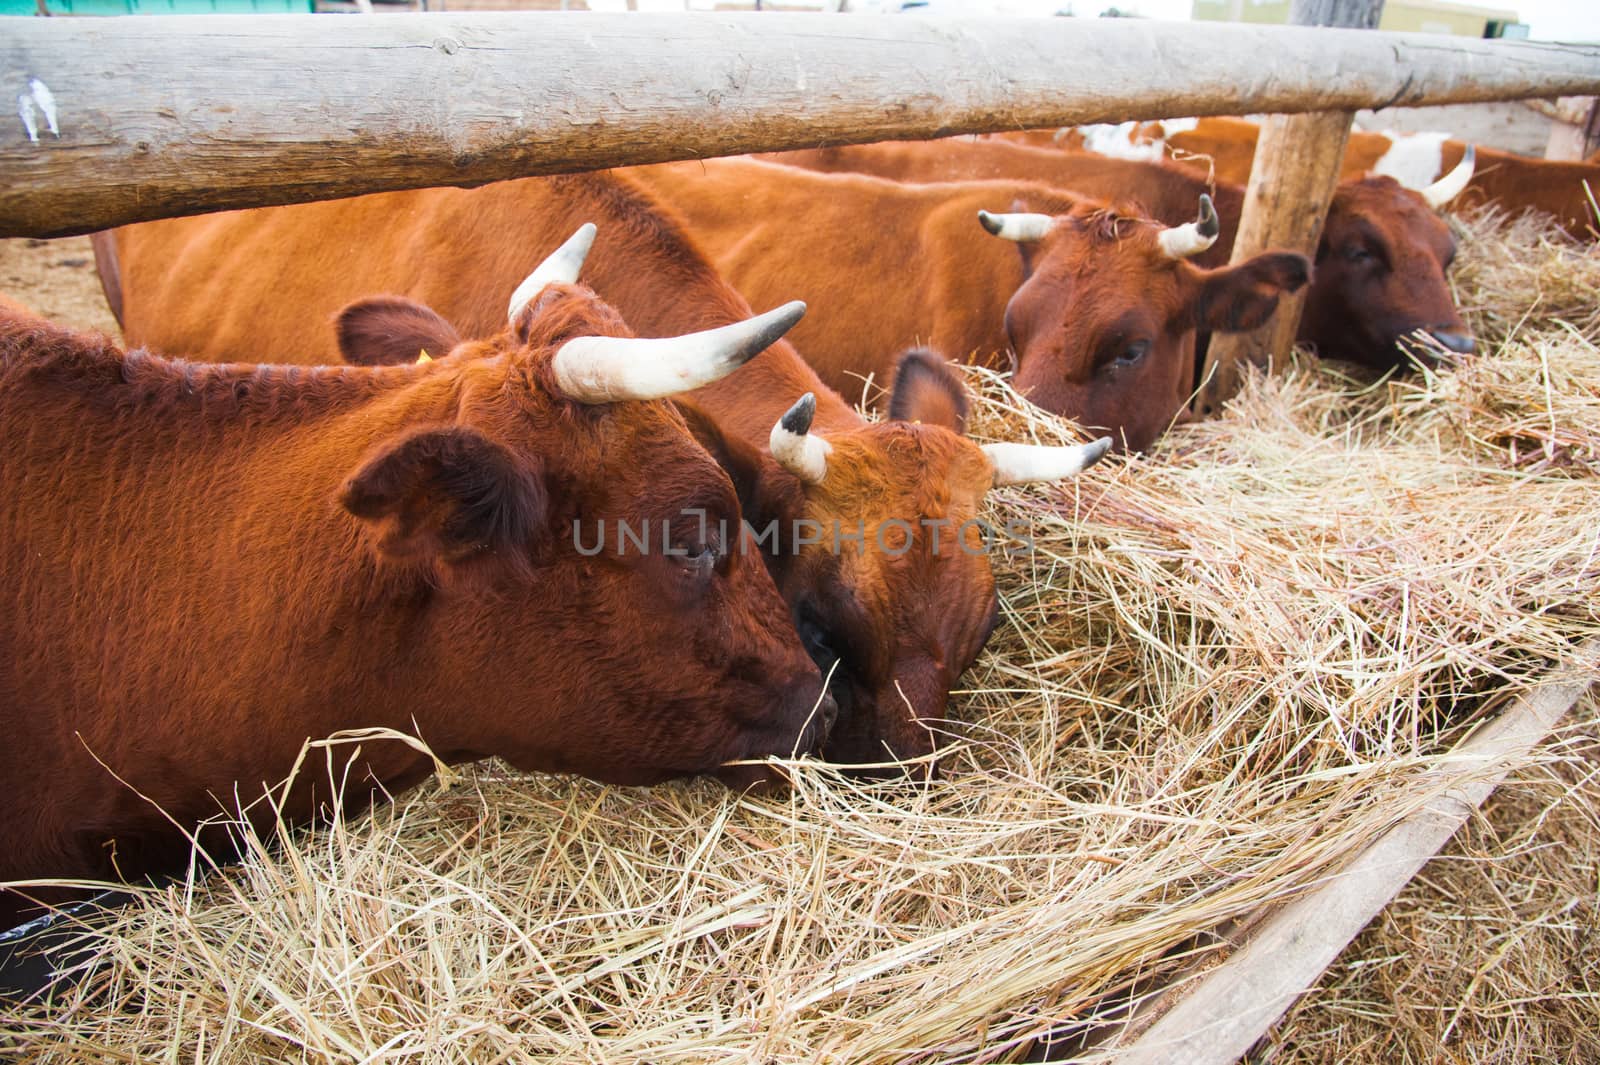 Cows in a farm. Dairy cows by grigorenko